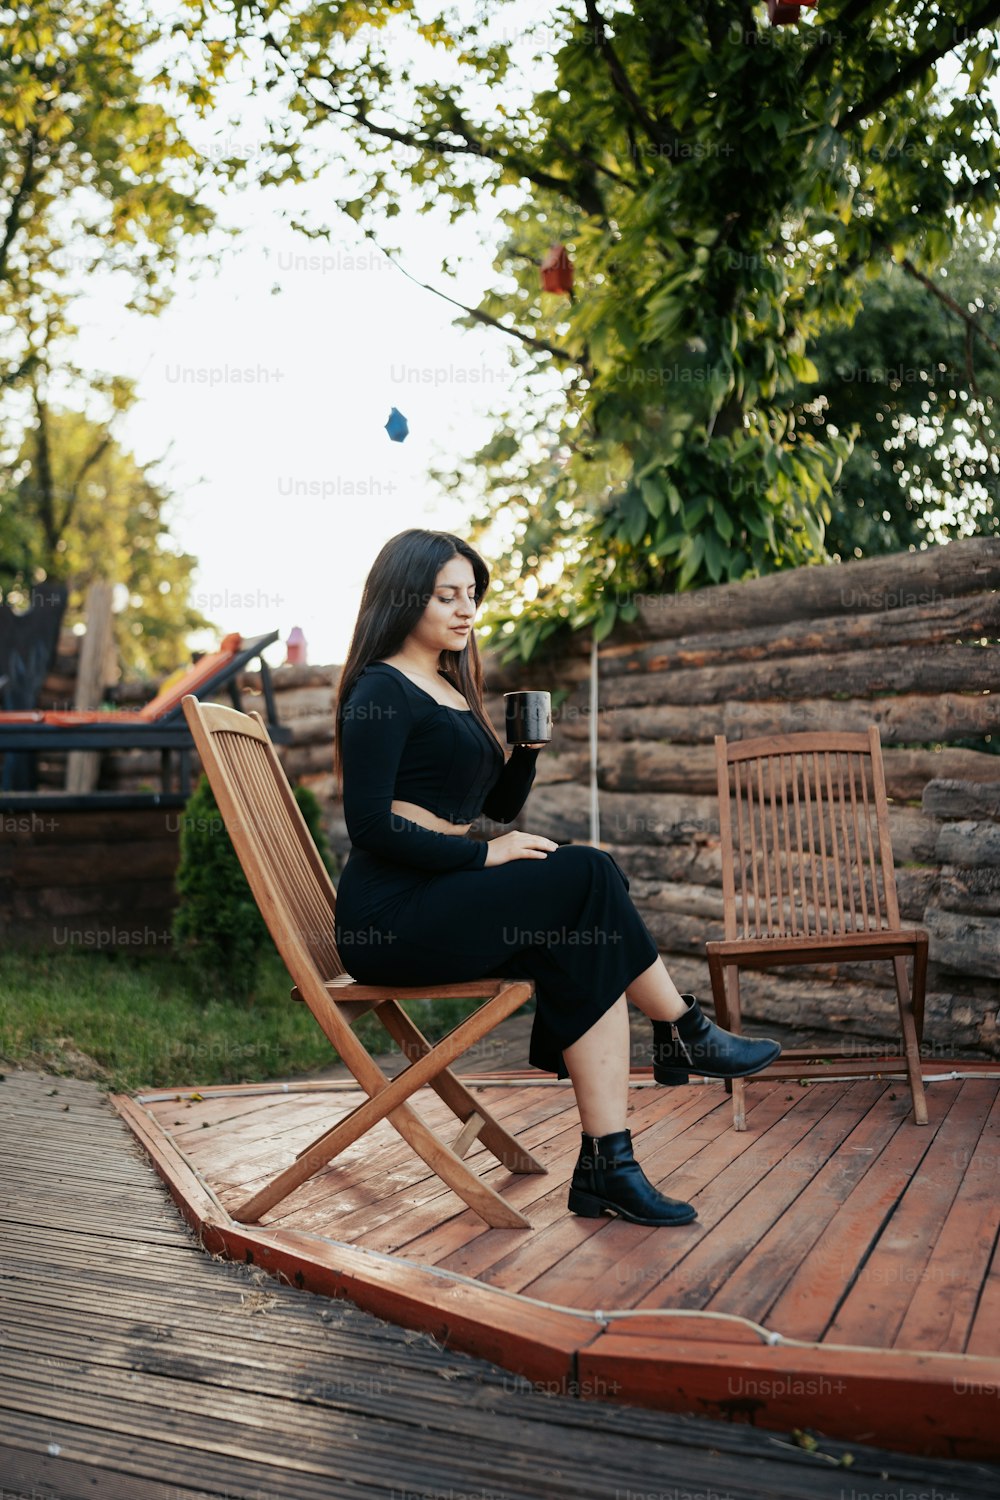 Una mujer sentada en una silla de madera sosteniendo una copa de vino